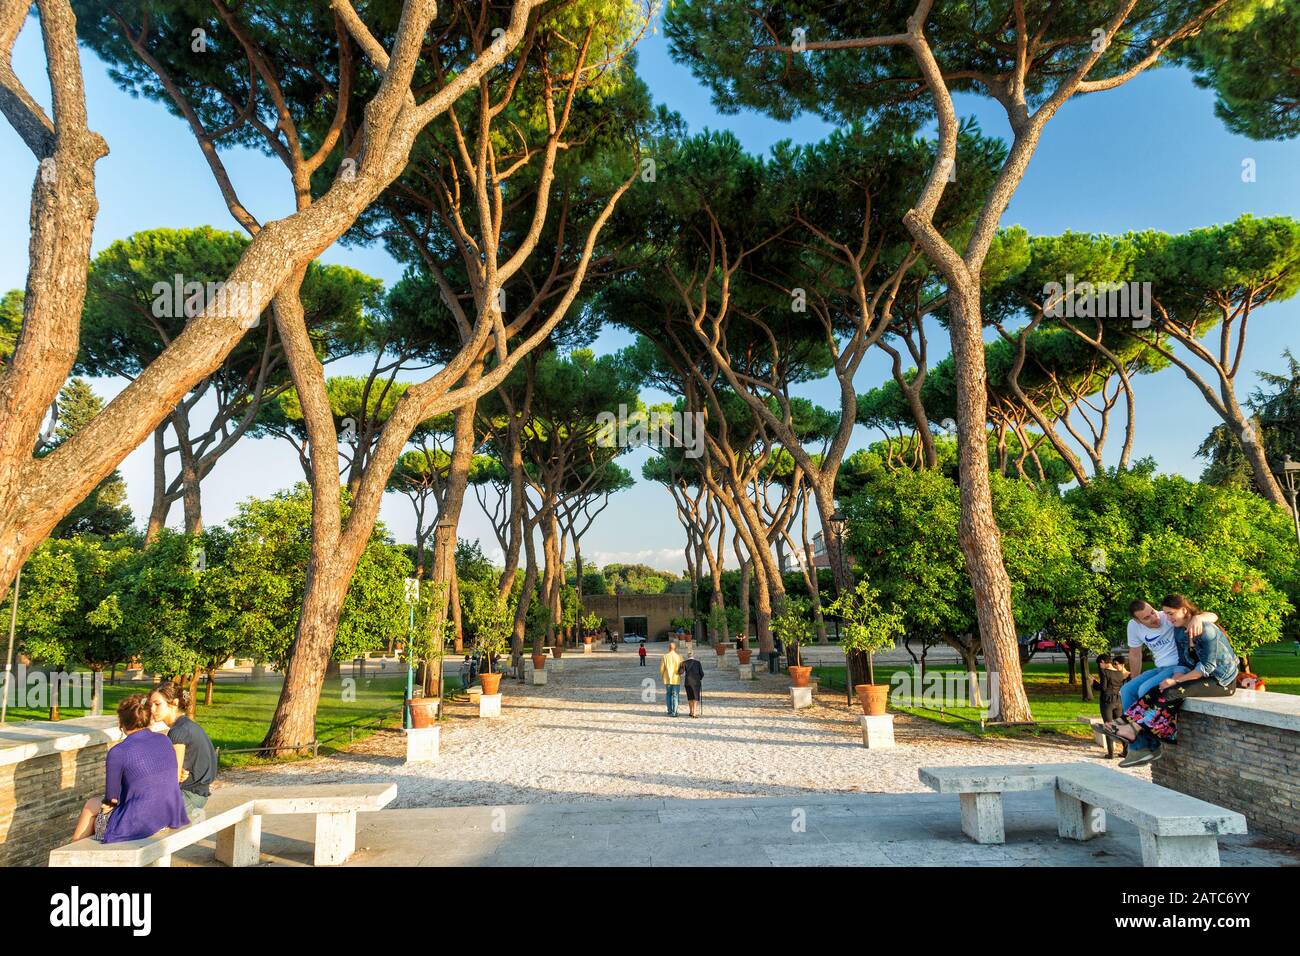 Roma, ITALIA - 3 OTTOBRE 2012: Parco sul colle Aventino. Si tratta di un posto bello e tranquillo nel centro di Roma per passeggiate e viaggi di piacere Foto Stock